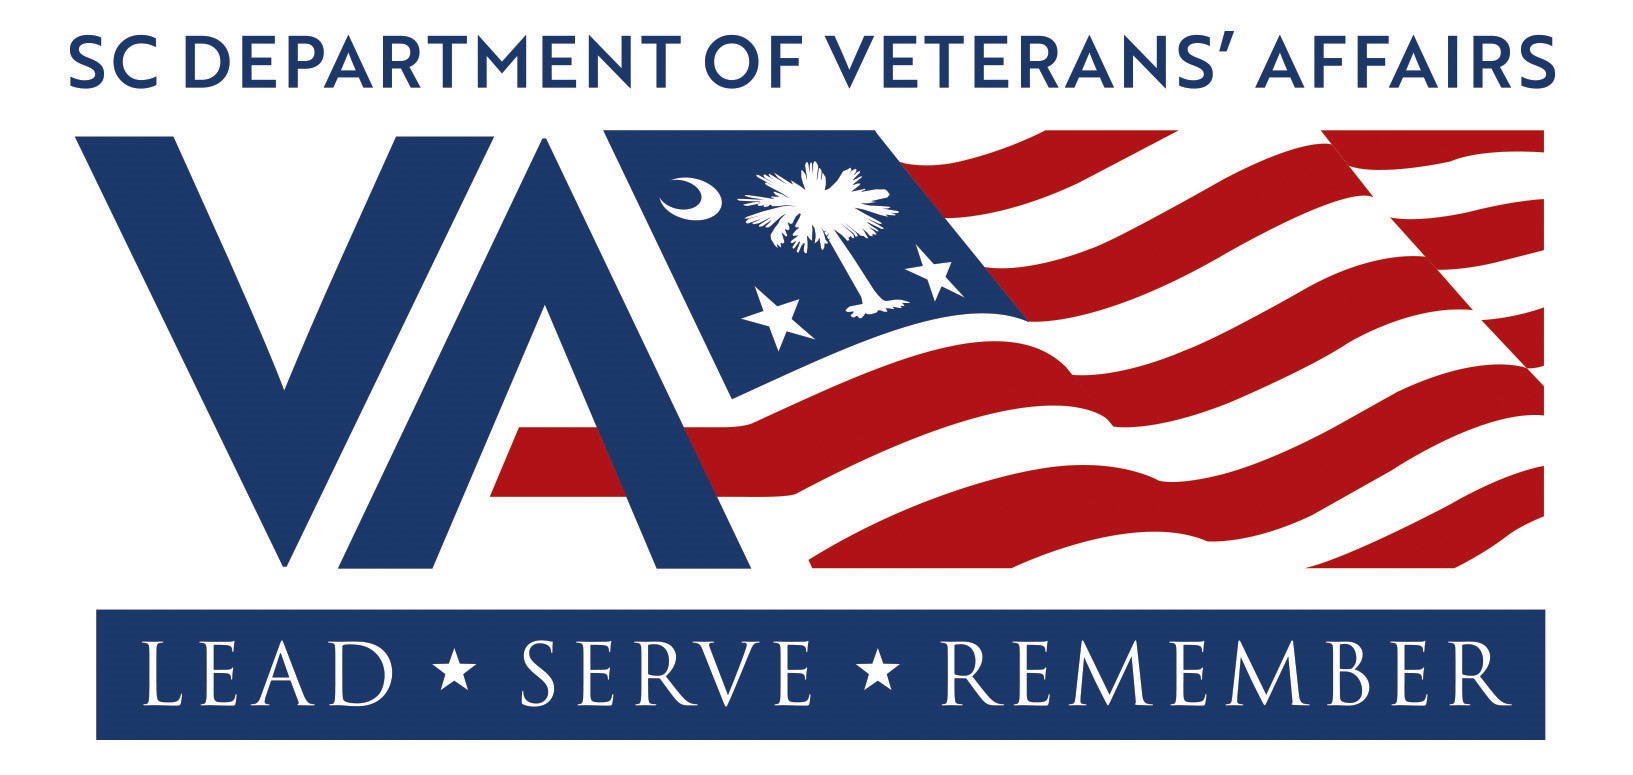 SC Department of Veterans' Affairs